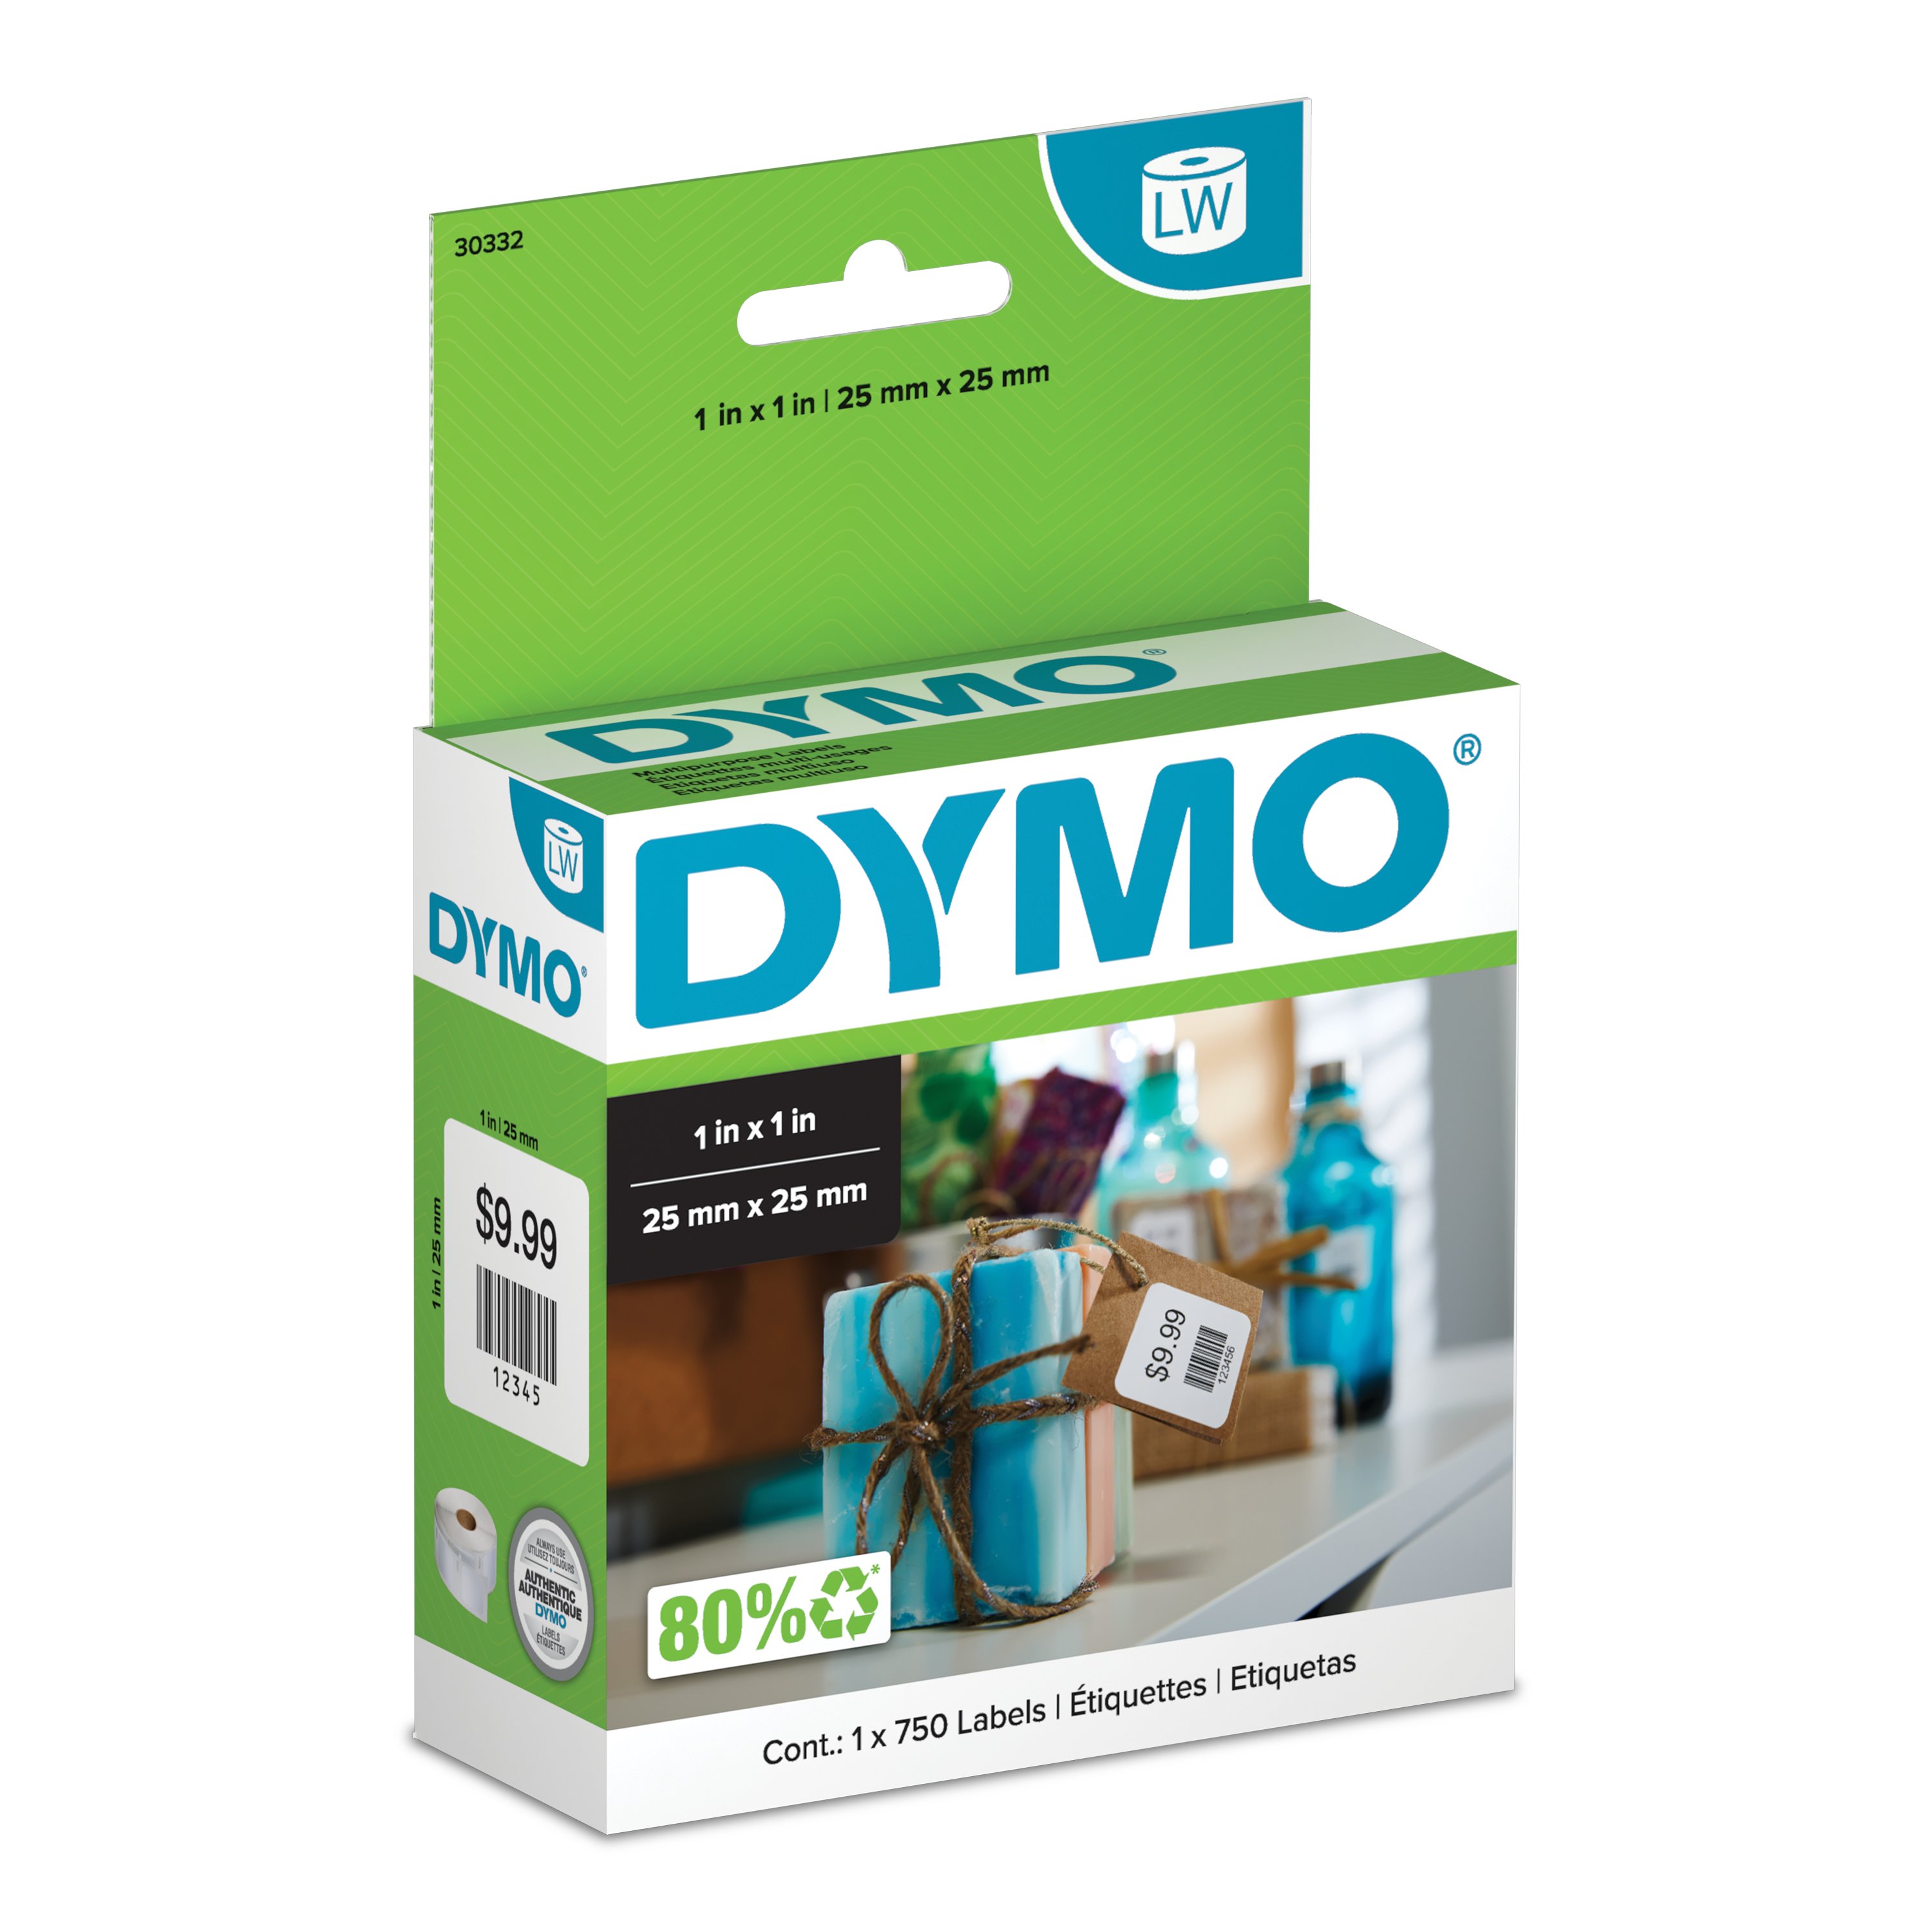 Dymo 99015 Lot de 10 rouleaux détiquettes multifonctions pour Dymo LabelWriter 4XL 450 400 330 320 310 Twin Turbo Duo Seiko SLP 450 430 420 400 240 220 200 120 100 Pro Plus 